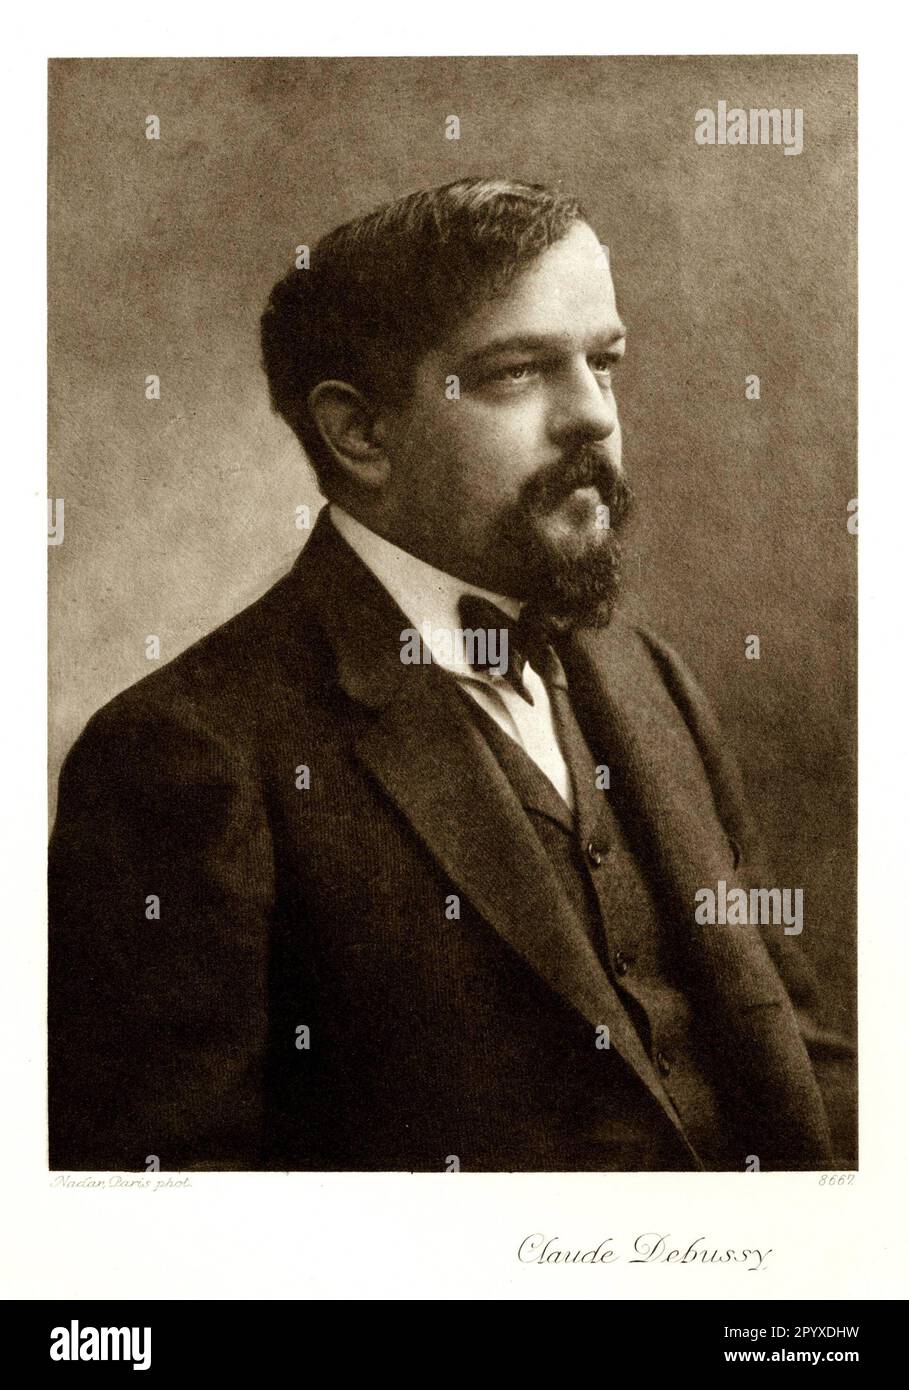 Claude Debussy (1862-1918), französischer Komponist. Fotografie von Nadar, Paris. Foto: Heliogravure, Corpus Imaginum, Hanfstaengl Collection. [Maschinelle Übersetzung] Stockfoto